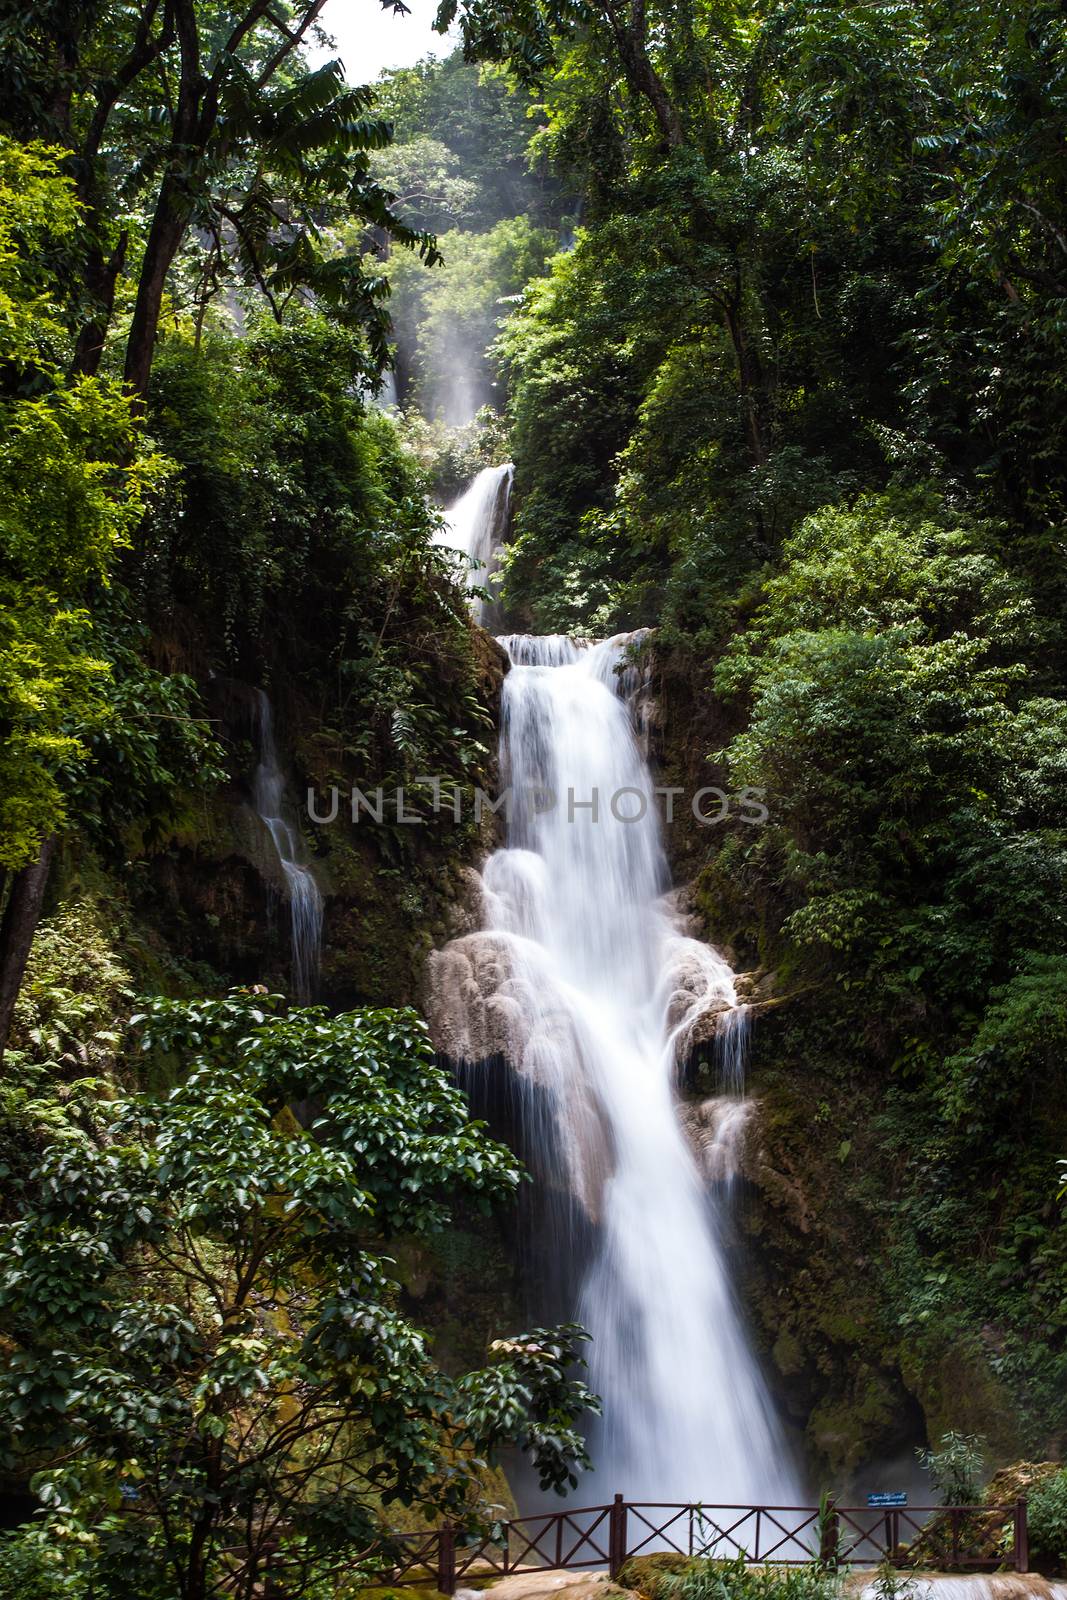 LUANG PRABANG, LAOS : The Kuang Si Falls. The falls begin in shallow pools atop a steep hillside.